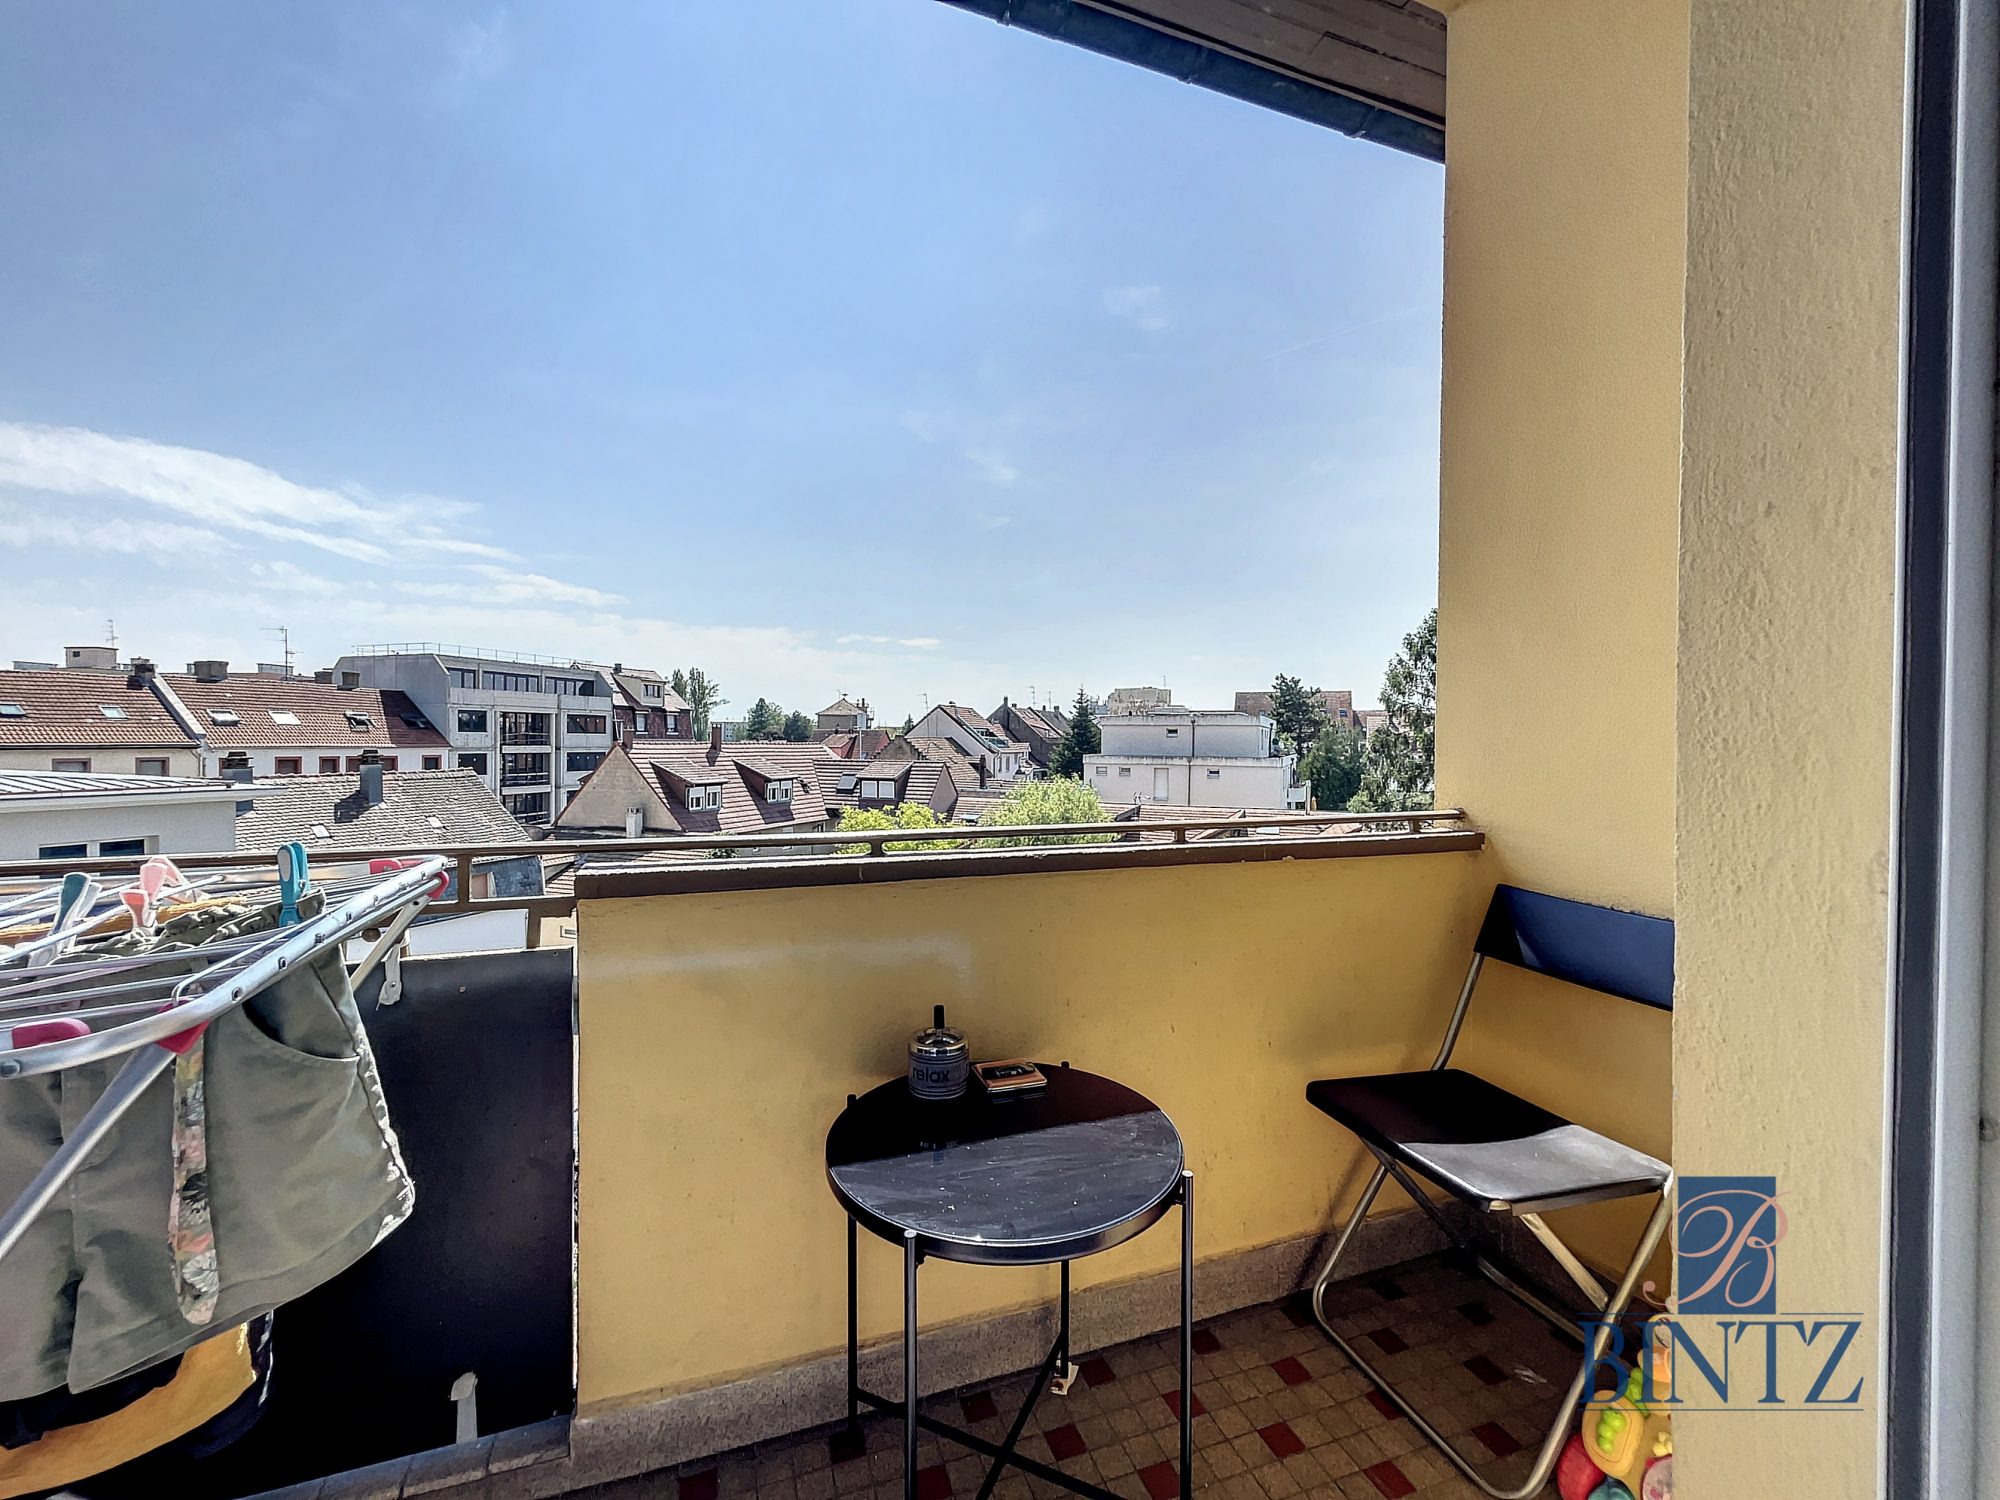 3P MONTAGNE VERTE - achat appartement Strasbourg - Bintz Immobilier - 7